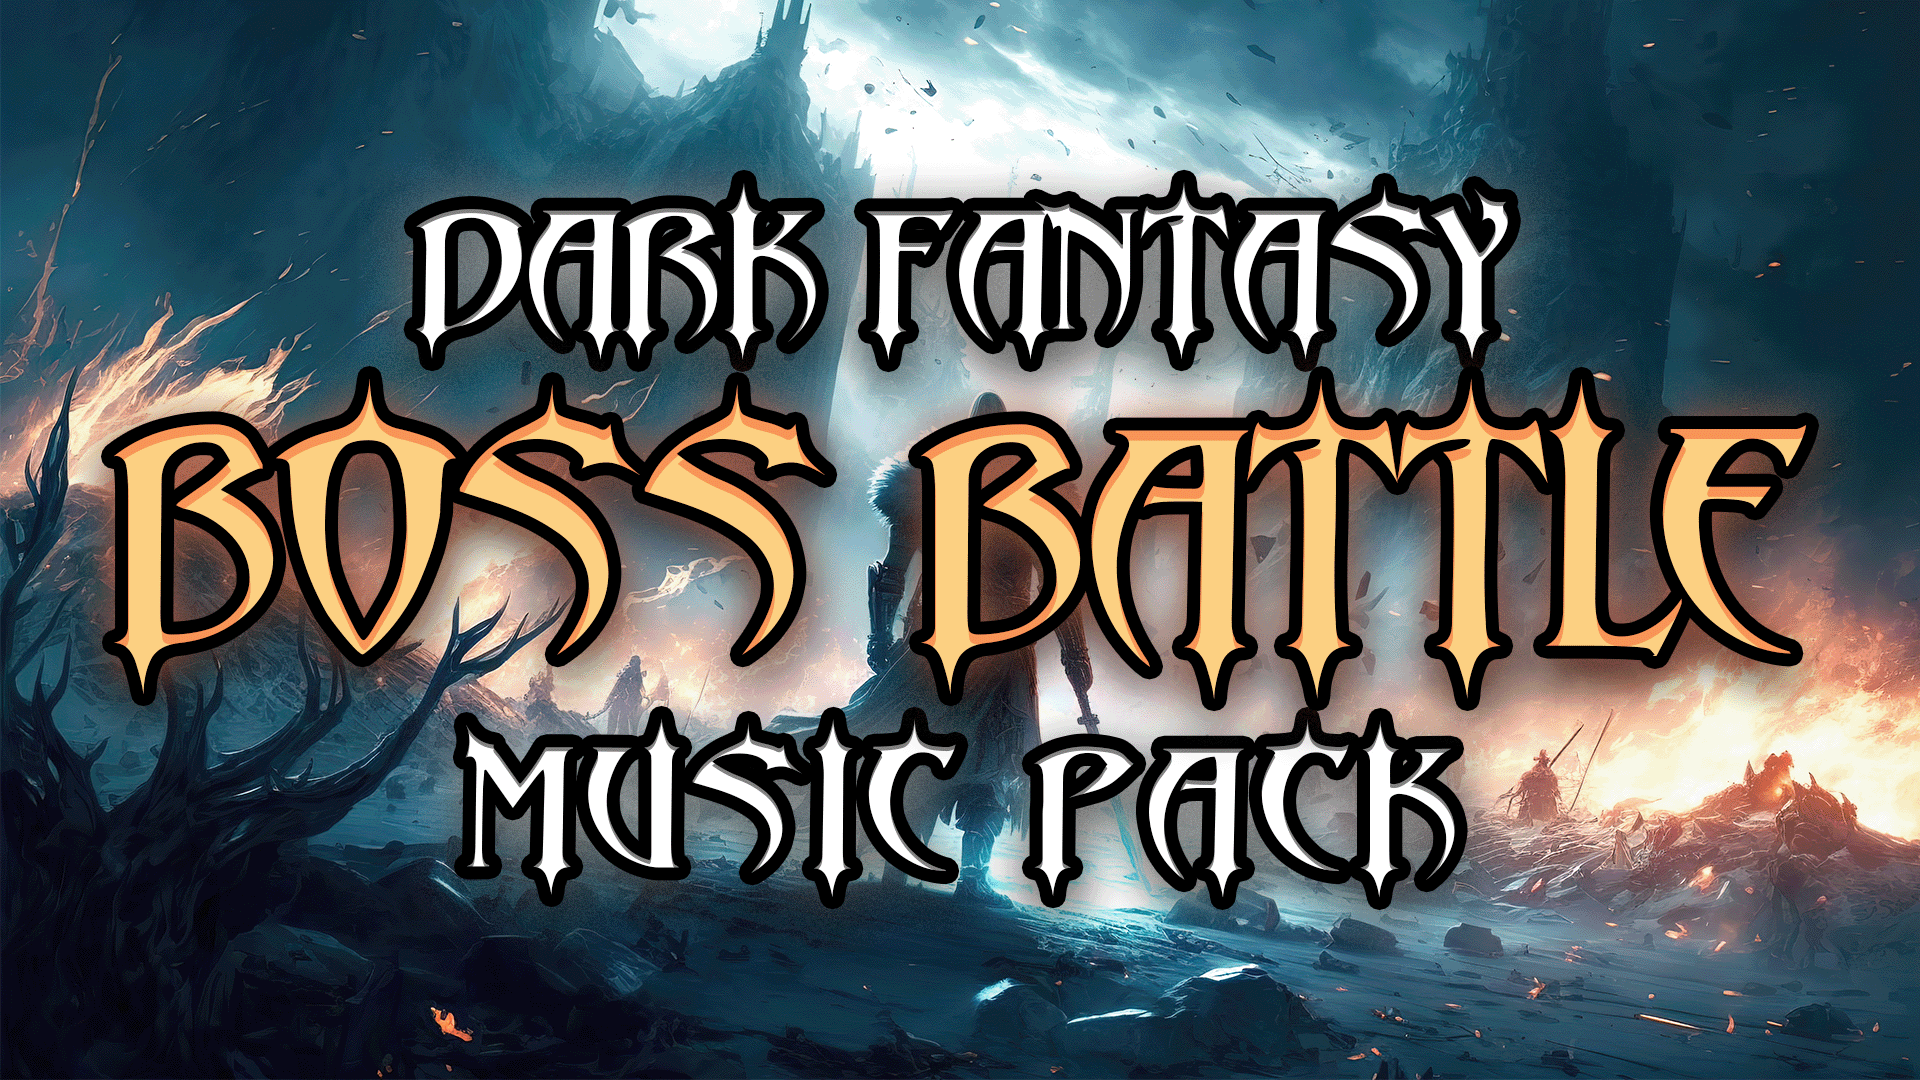 Free 6 Dark Fantasy Boss Battle Tracks